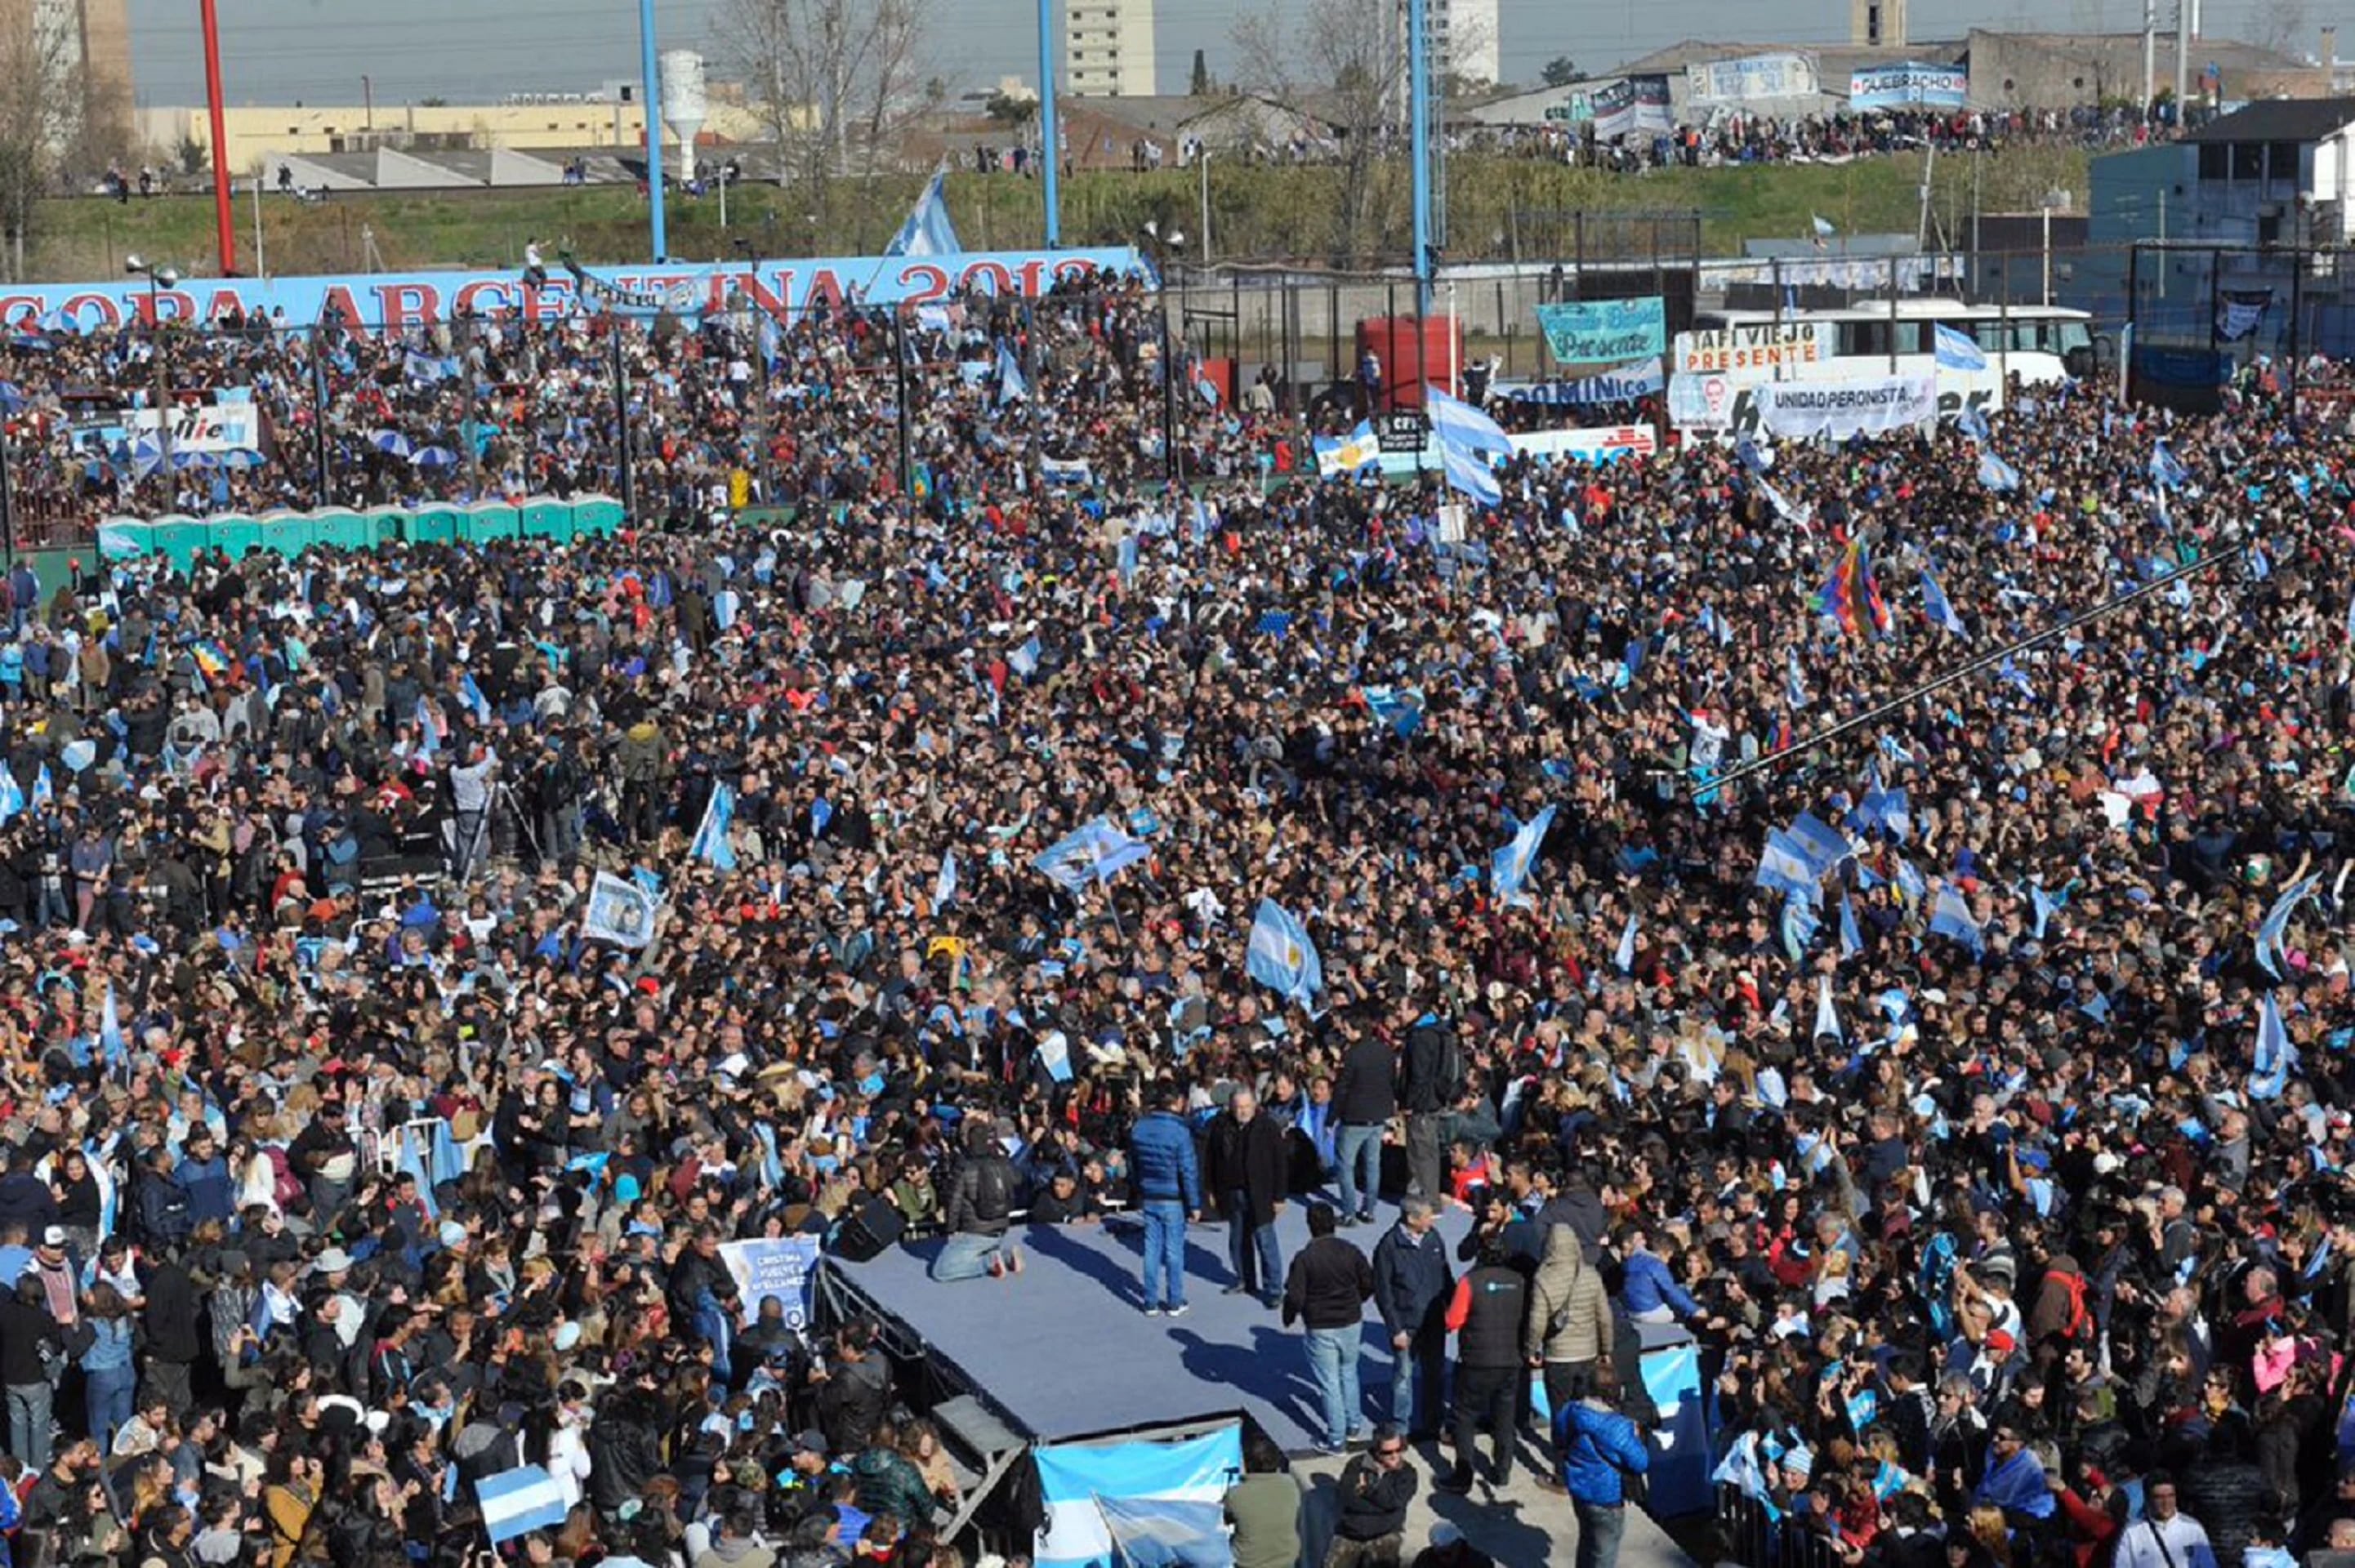 El pequeño escenario que ocupó Cristina Kirchner; la militancia espera ansiosa la salida de su referente política